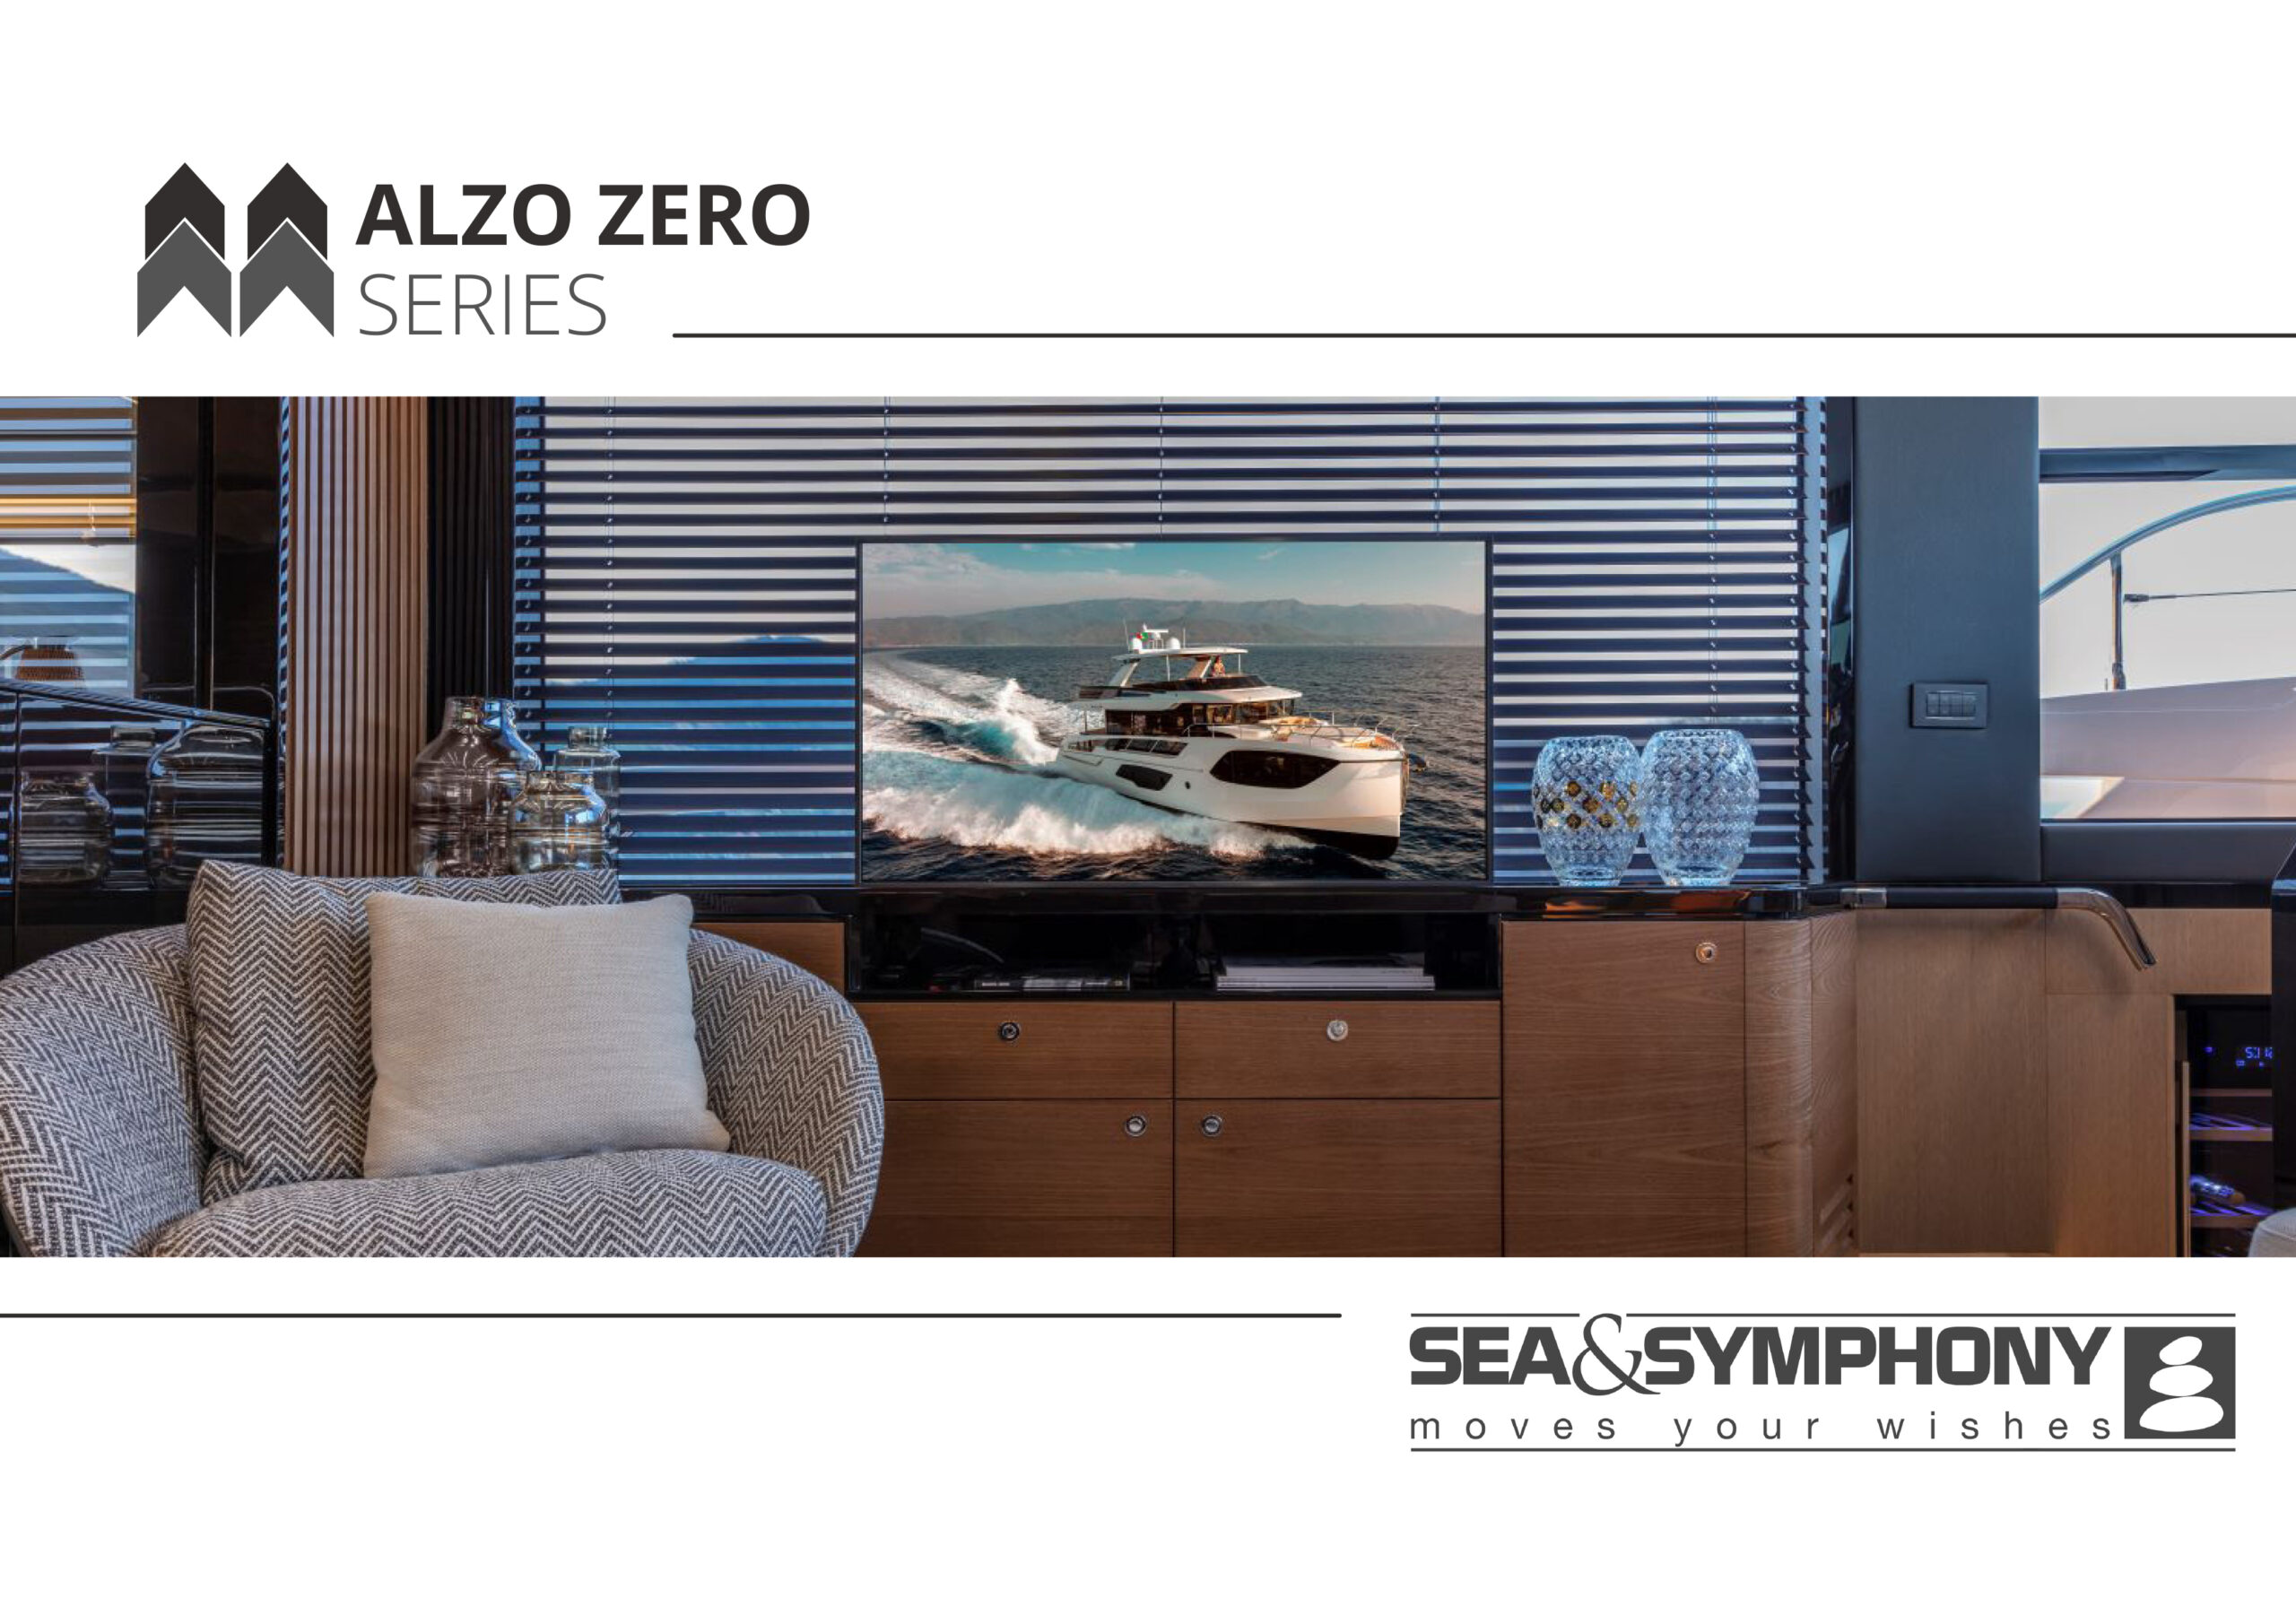 Alzo Zero brochure